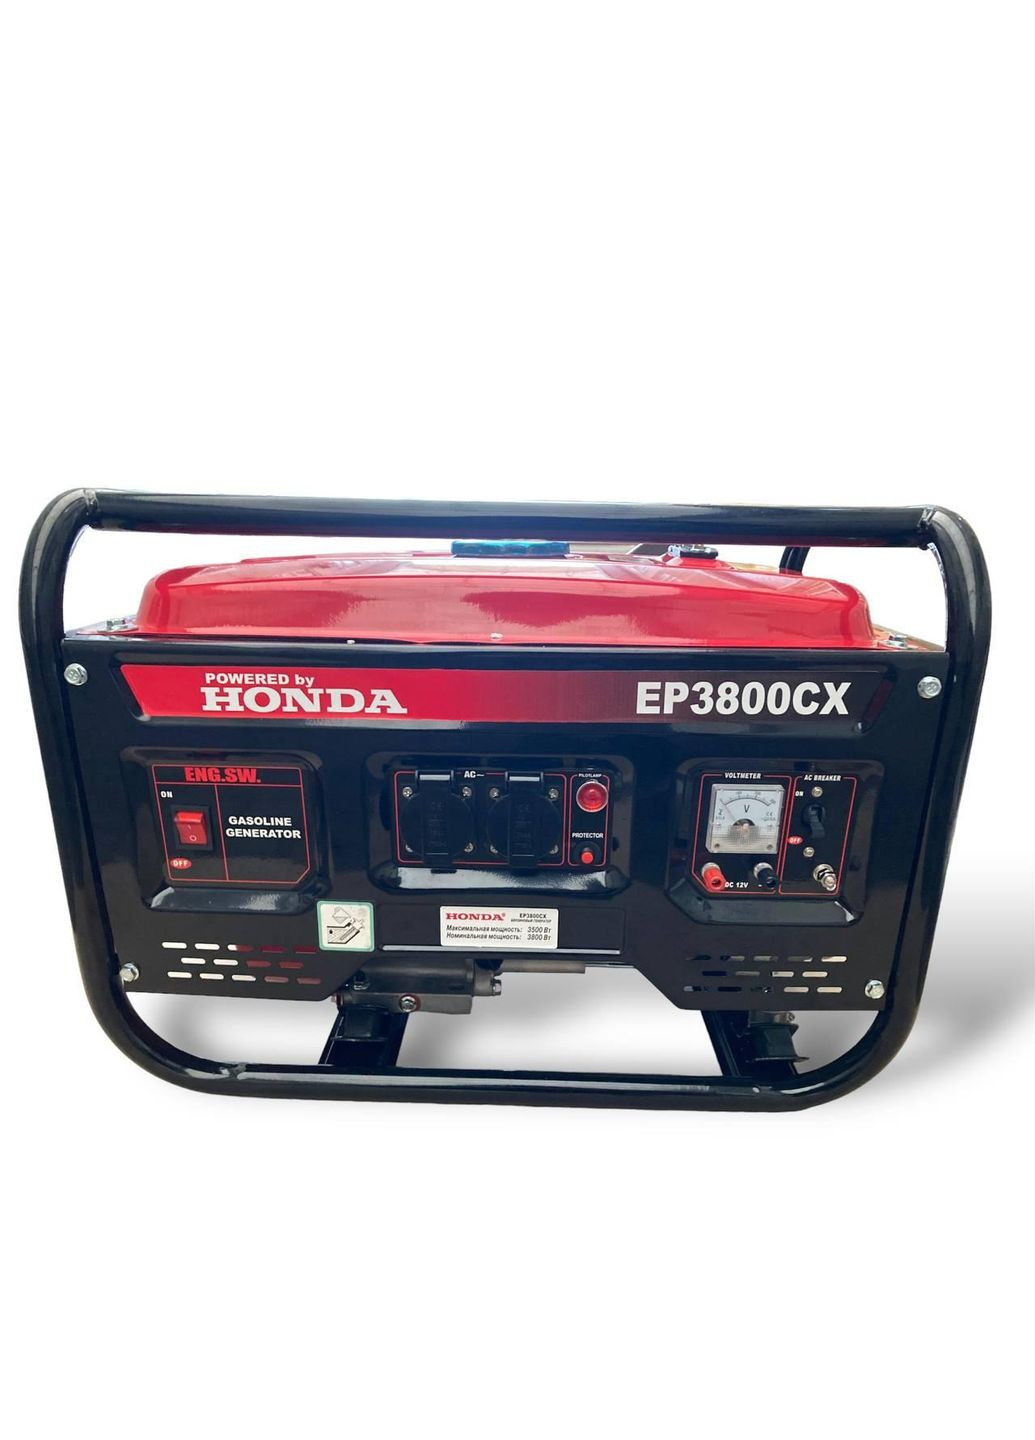 Генератор бензиновый EP3800CX 3.1 кВа(кВт)GX 240 ручной стартер 4-тактный Honda (260511784)